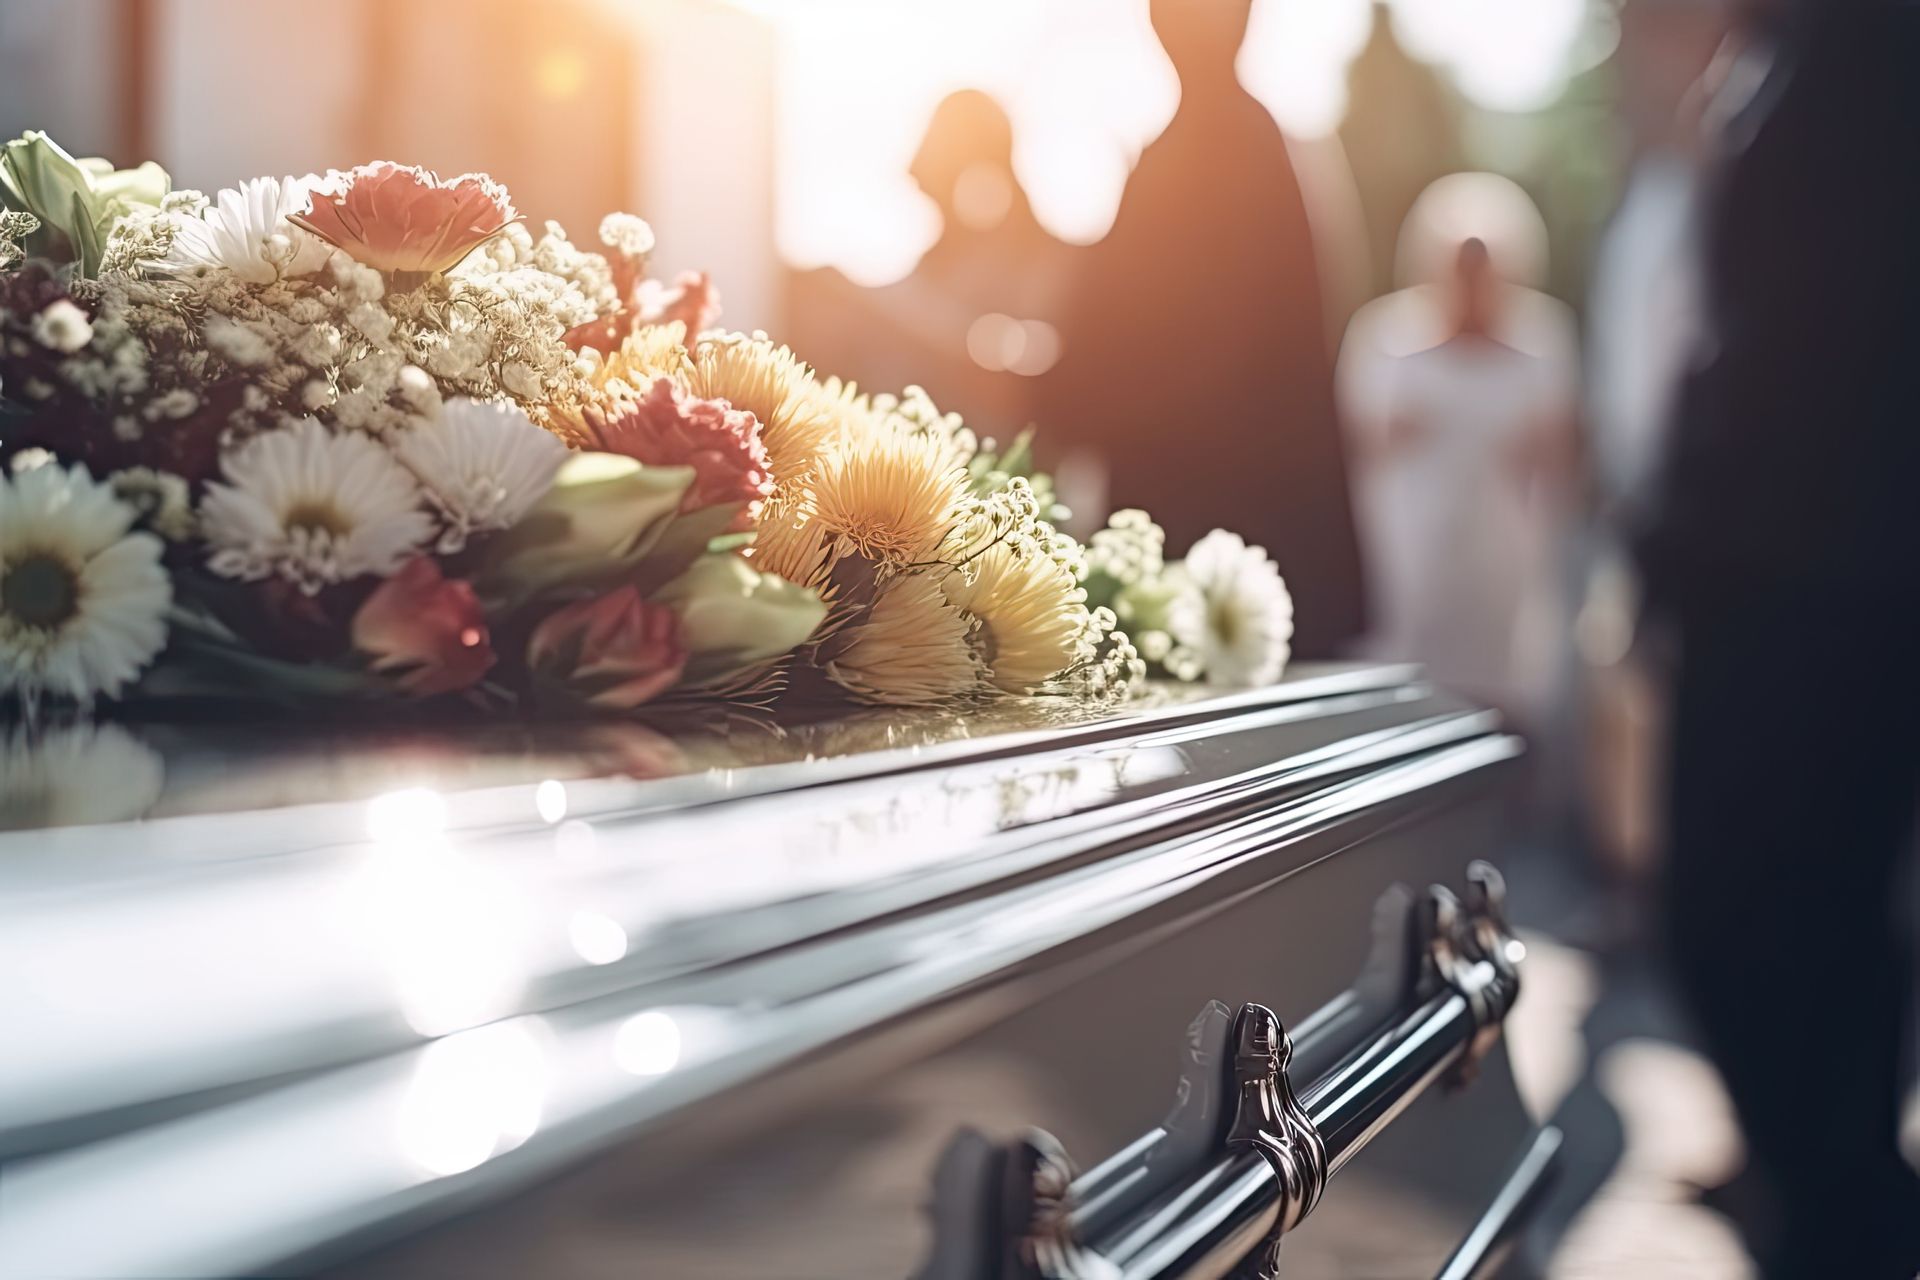 Le cercueil en bois part pour son dernier voyage, accompagné d'une composition de fleurs